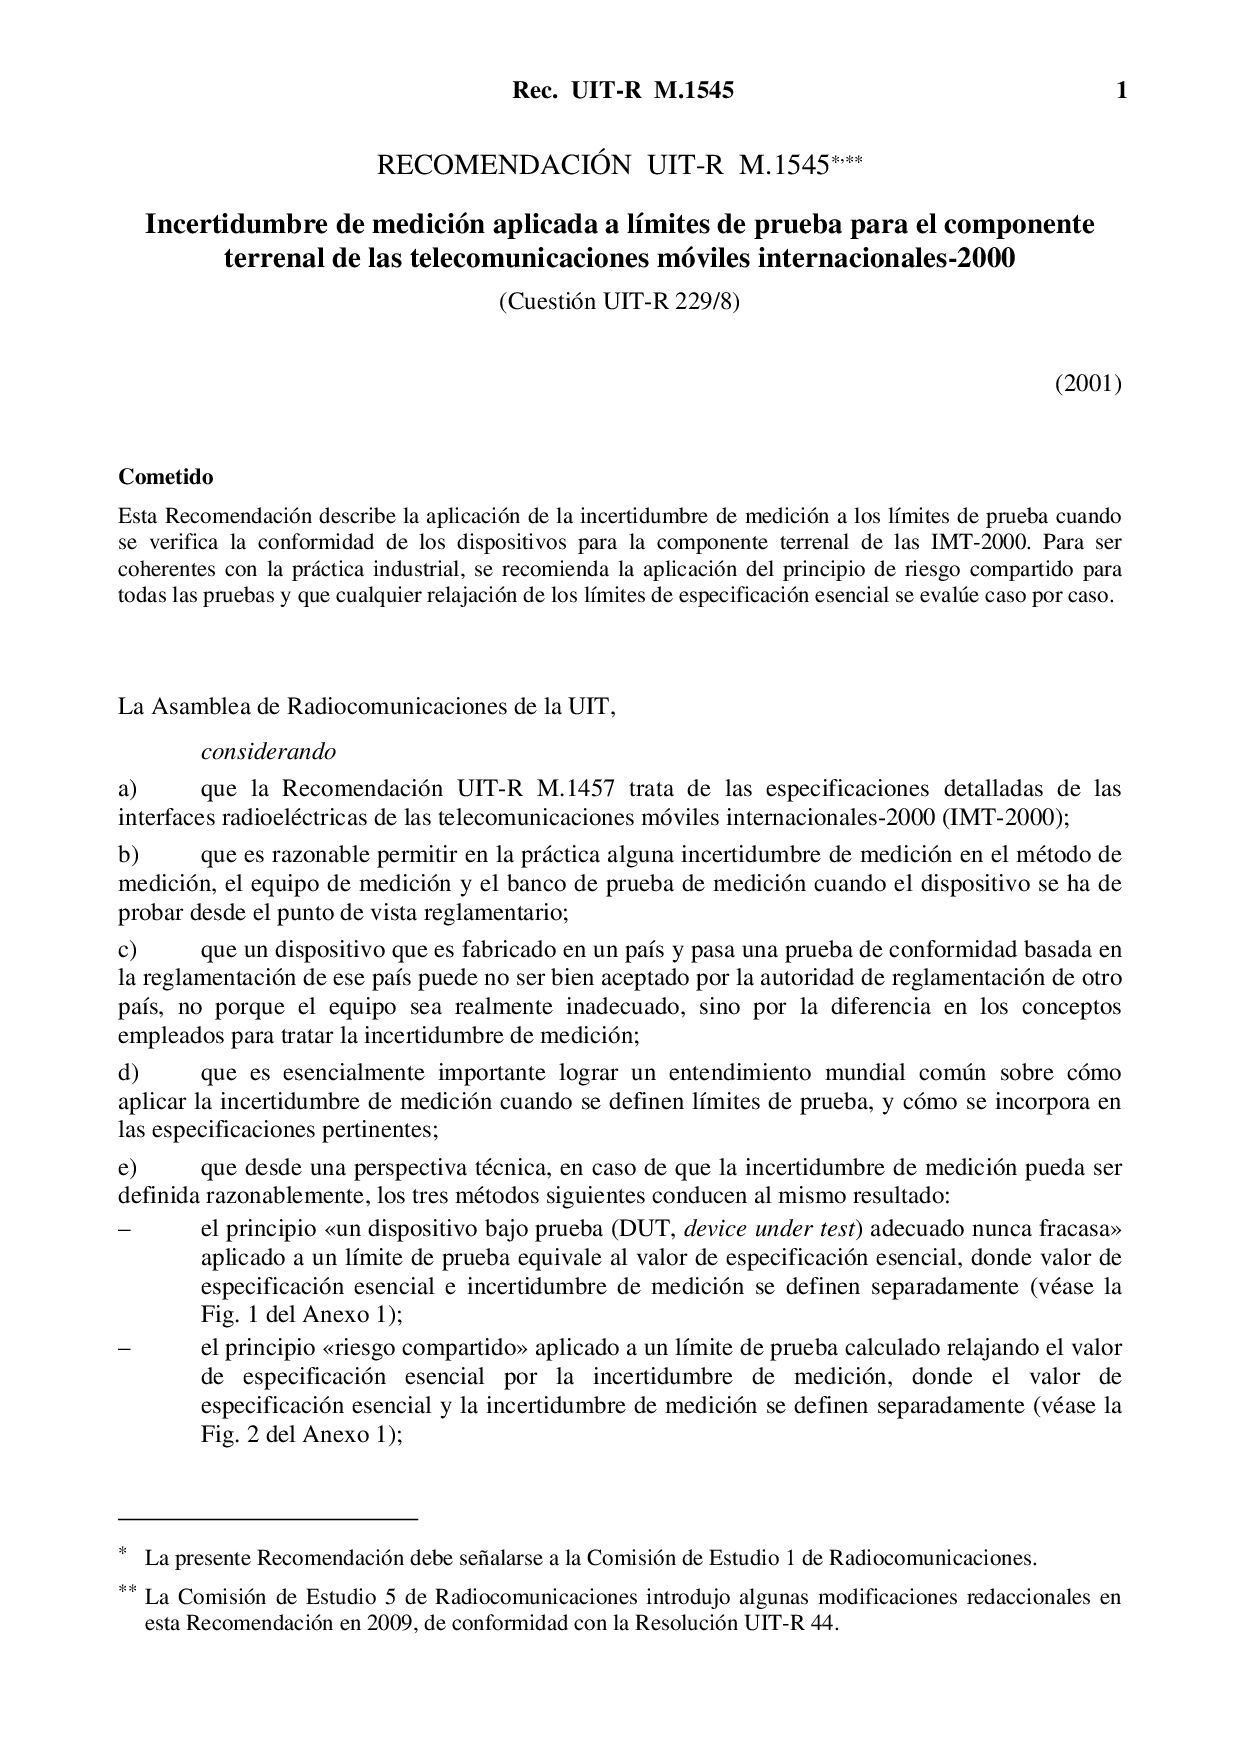 ITU-R M.1545 SPANISH-2001